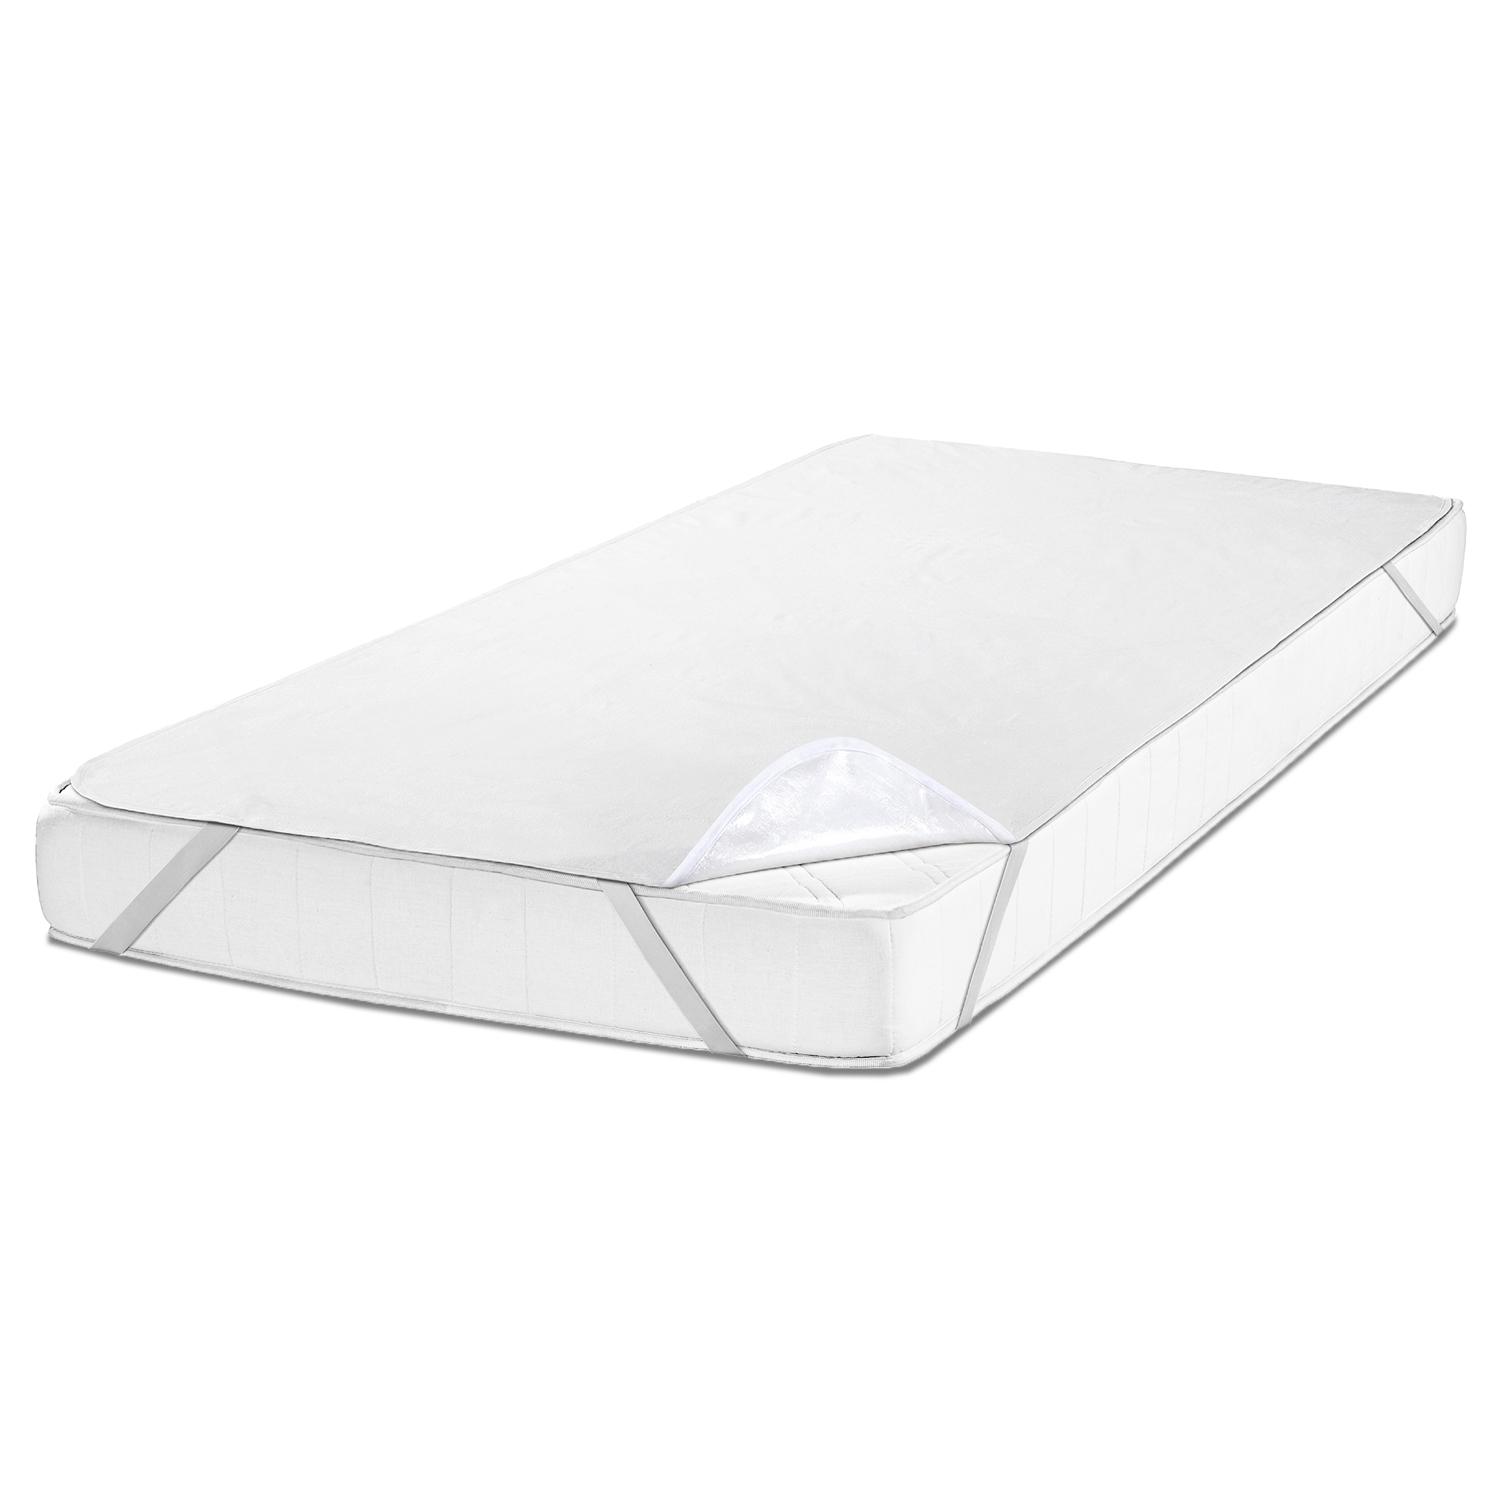 Sleezzz Vital su geçirmez molleton yatak koruyucu sabit gerginlik 160 x 200 cm, %100 pamuktan yapılmış yatak koruyucu beyaz